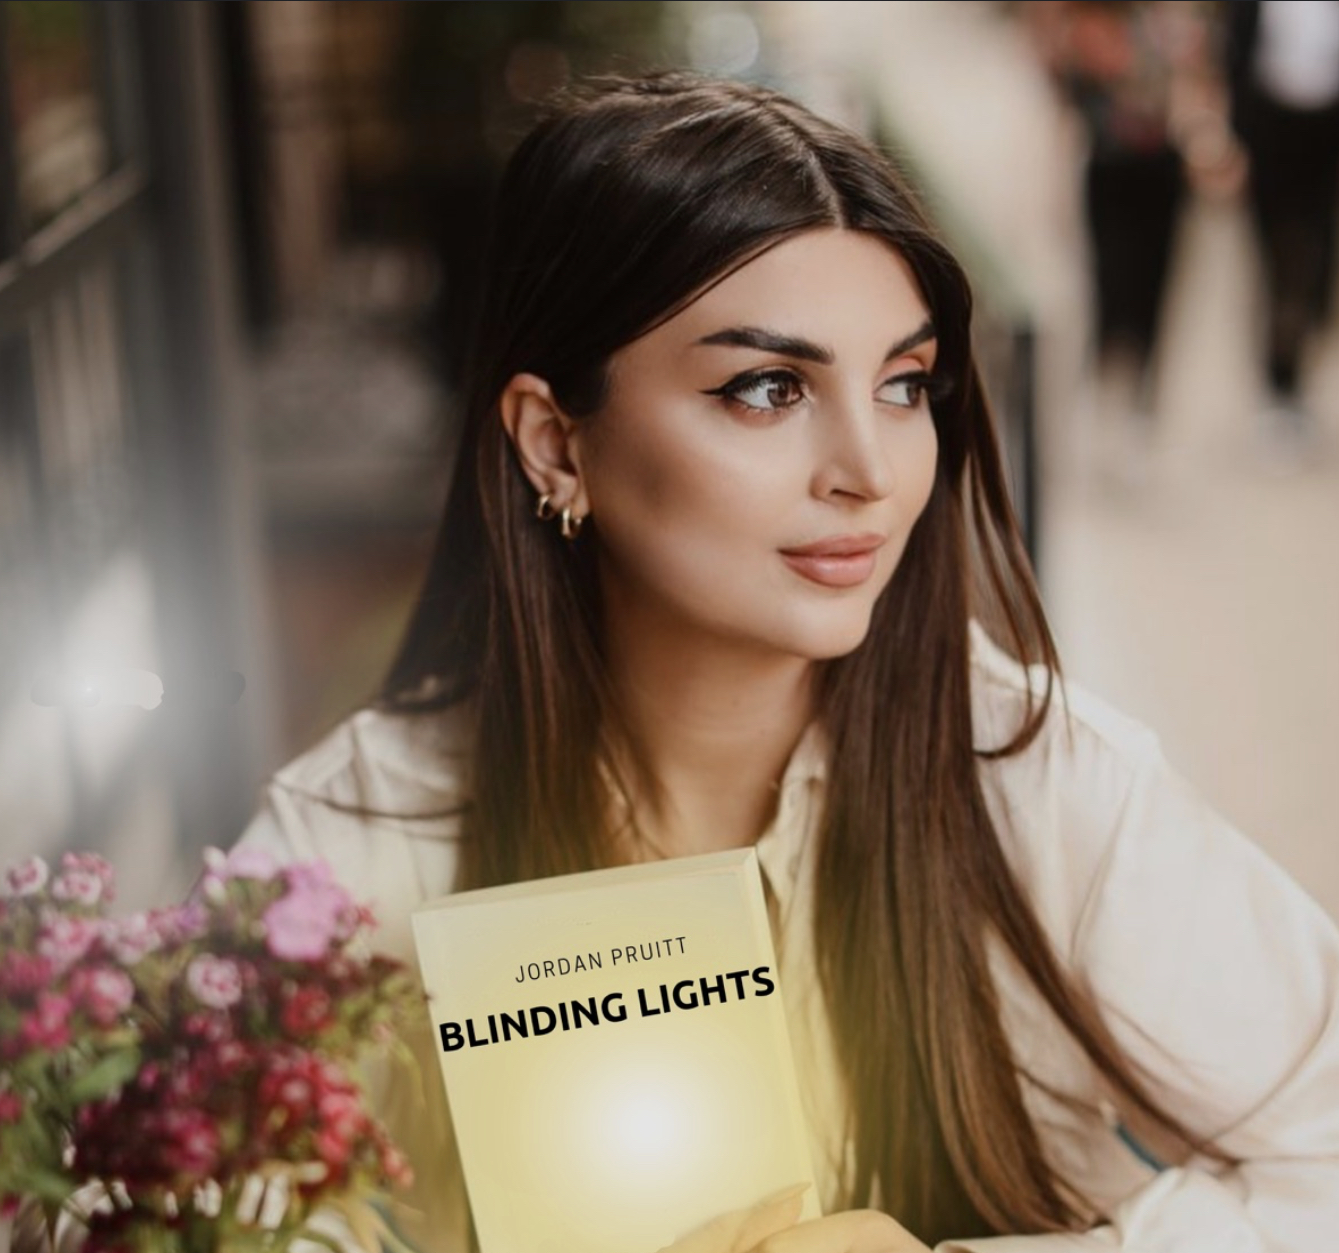 Jordan Pruitt Blinding Lights cover artwork